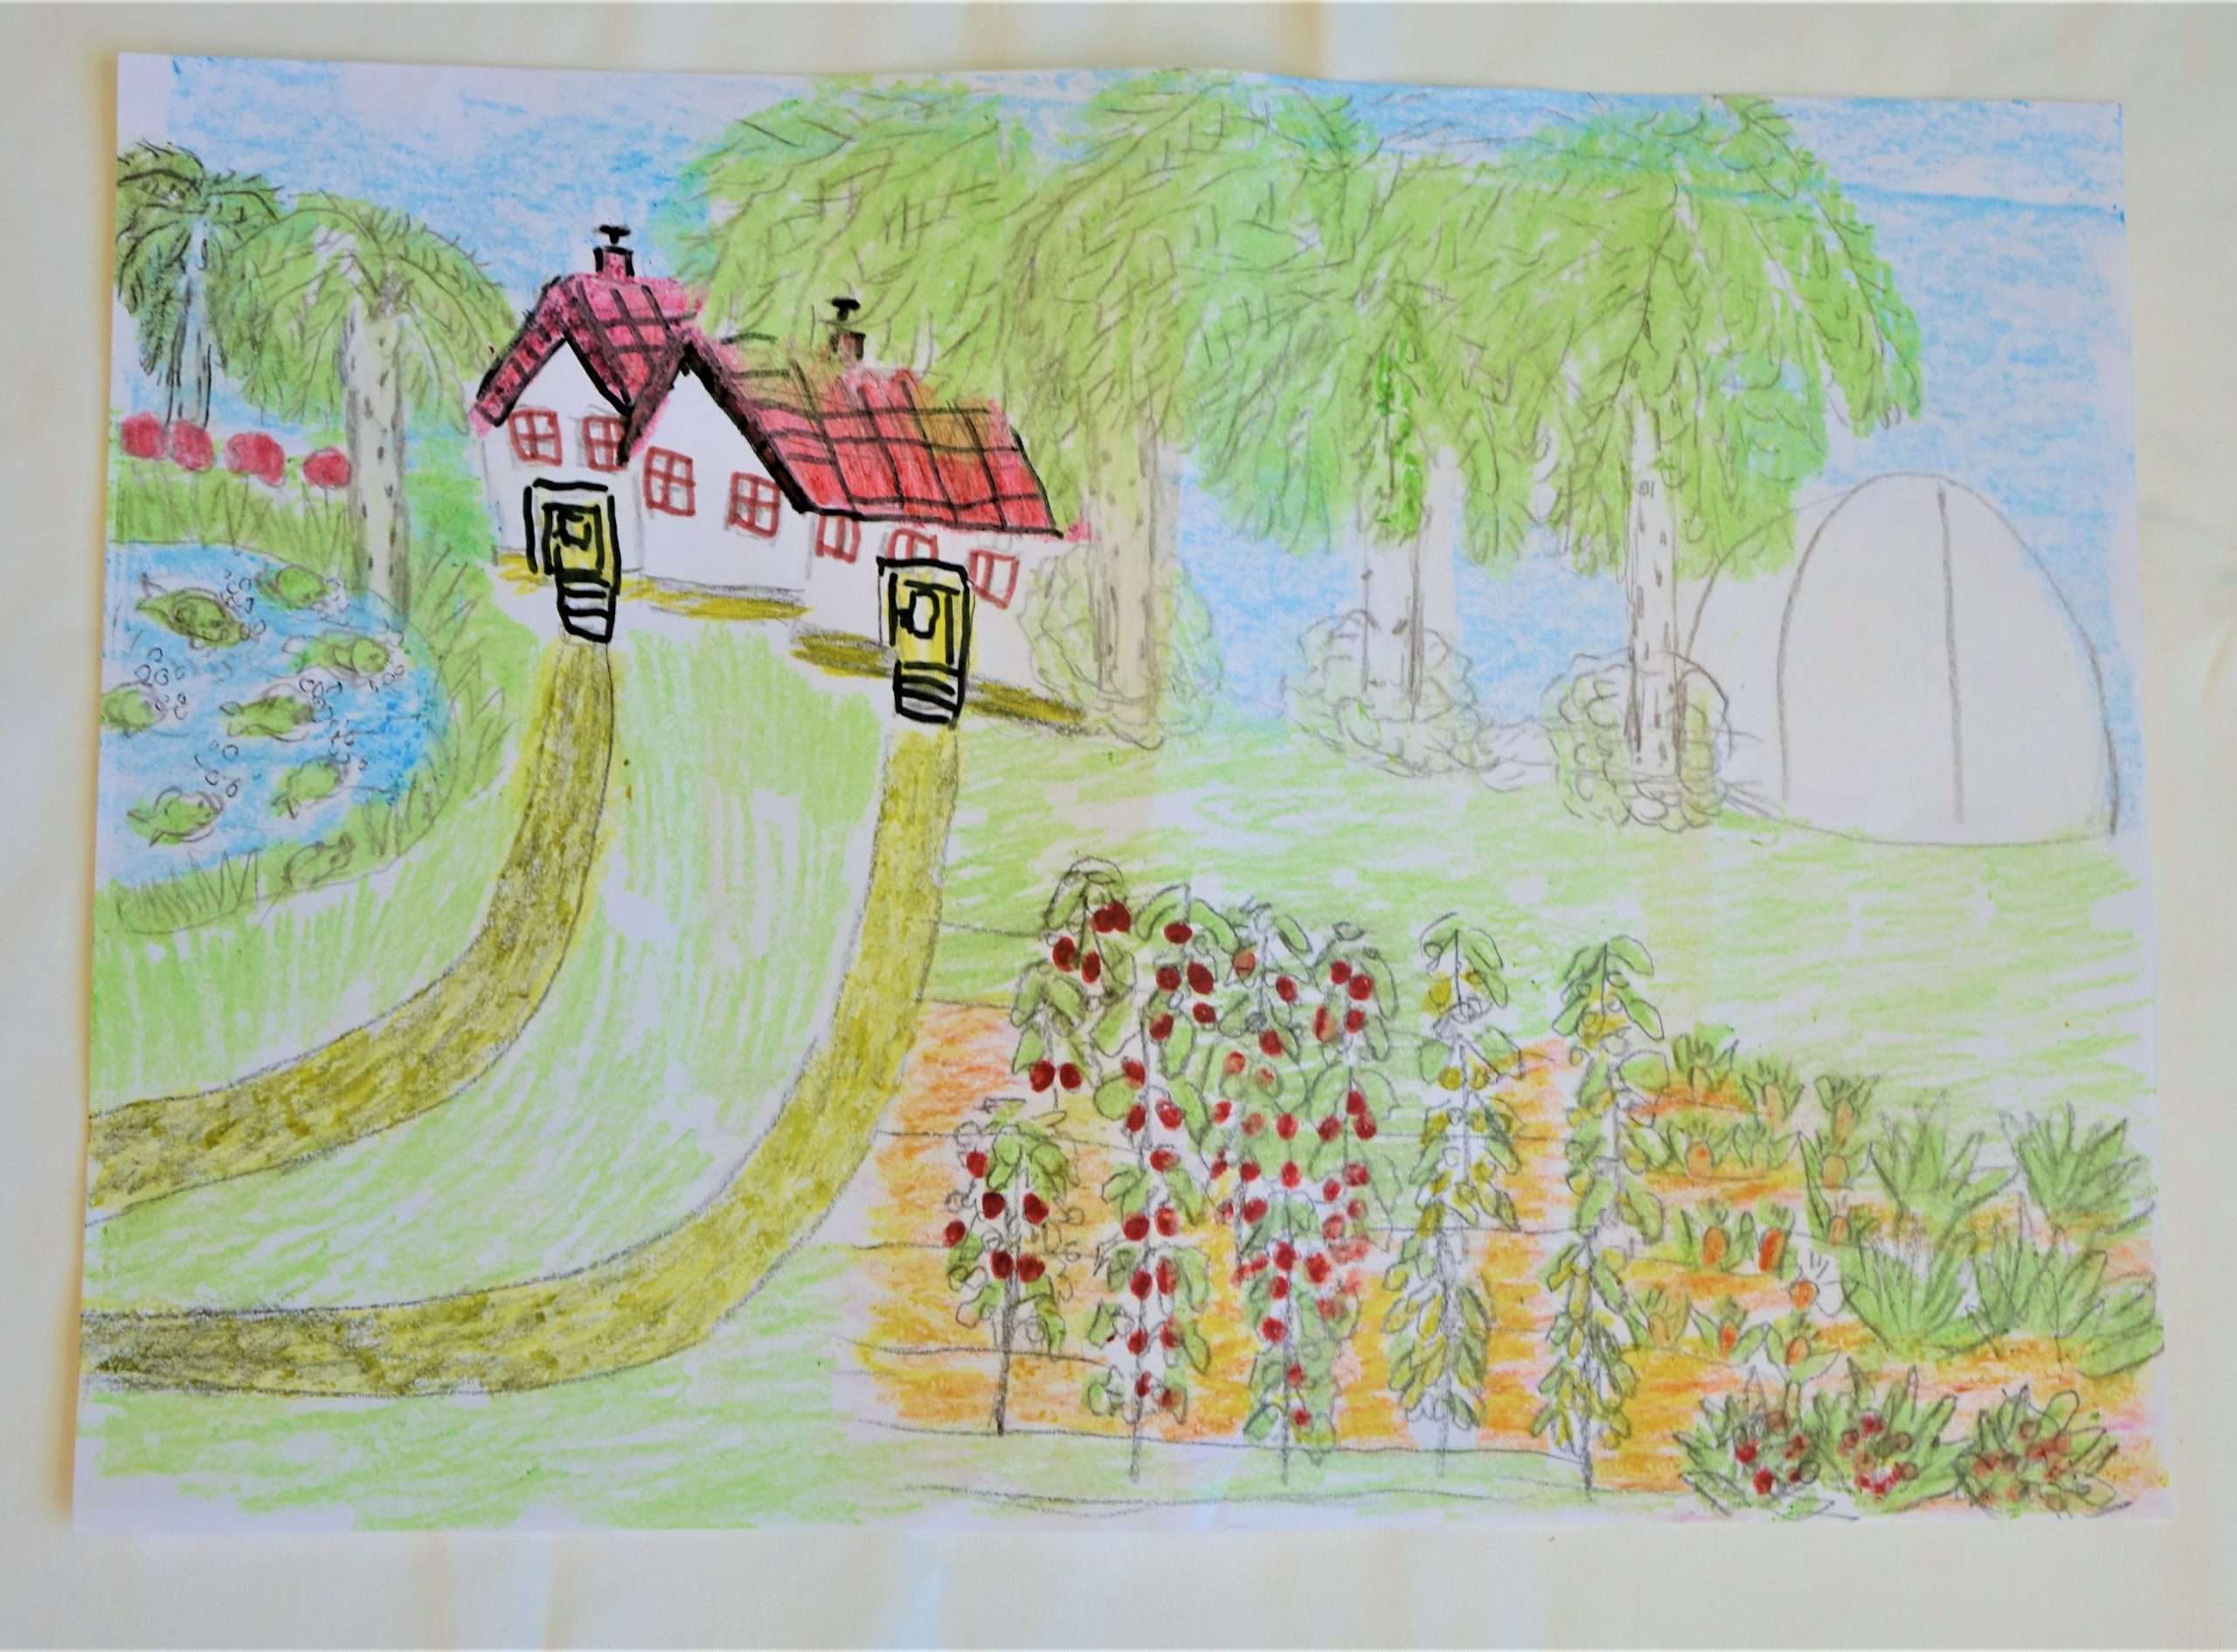 Színes ceruzával rajzolt A3 méretű képen a kertészet kerül bemutatásra. A háttérben található egy épület, ami mellett jobbra egy üvegház került lerajzolásra. A kép bal oldalán egy tó látható, valamint mögötte diófák és hársfák. A kép előterében veteményeskert lett rajzolva.